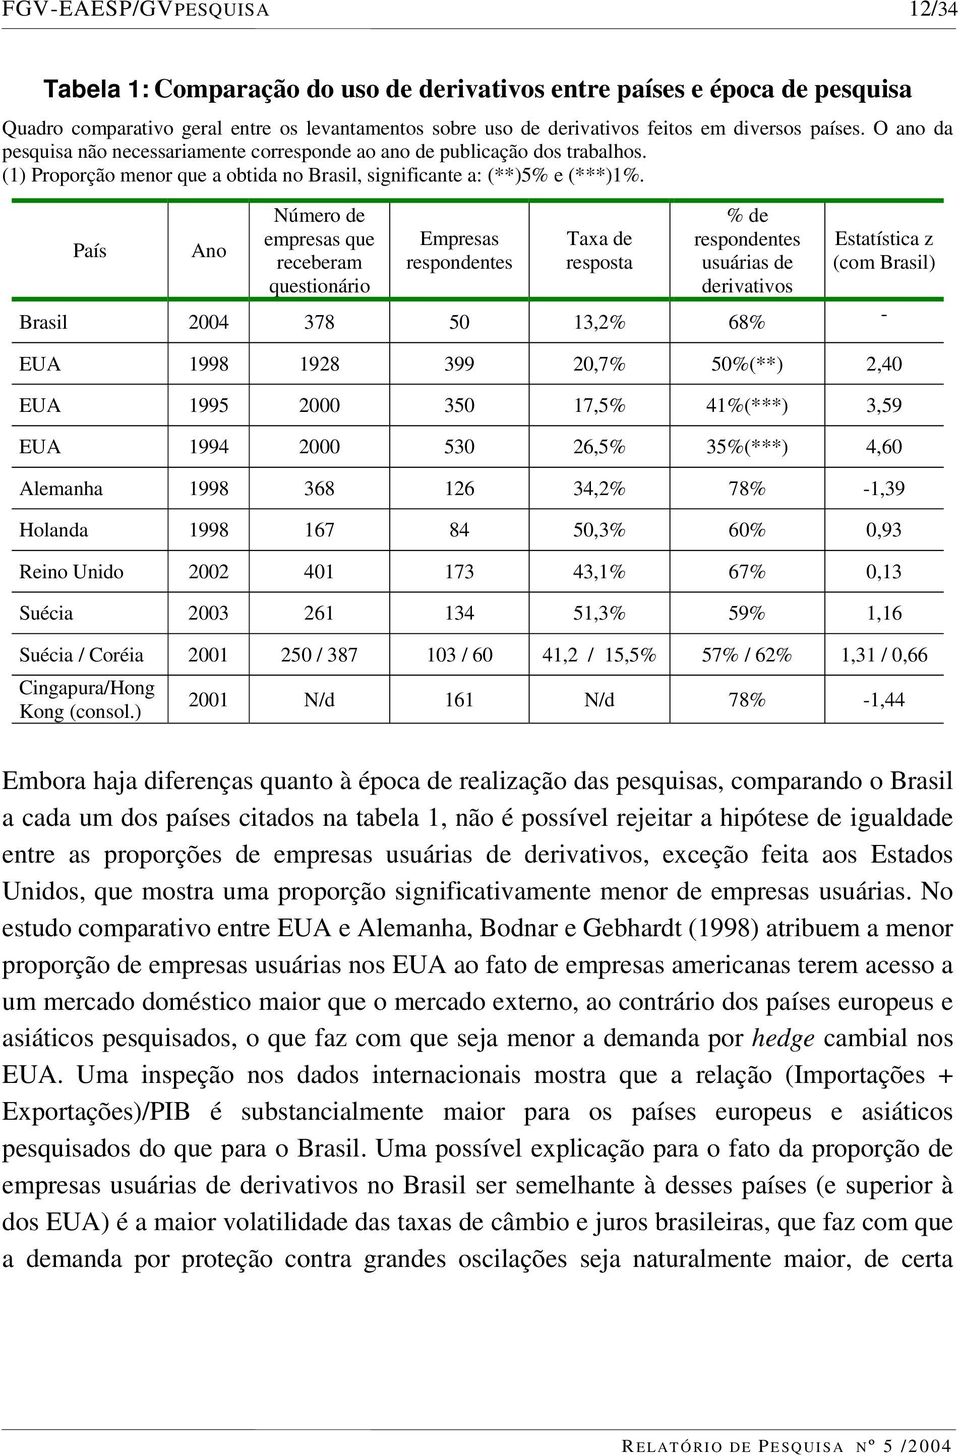 País Ano Número de empresas que receberam questionário Empresas respondentes Taxa de resposta % de respondentes usuárias de derivativos Brasil 2004 378 50 13,2% 68% Estatística z (com Brasil) - EUA